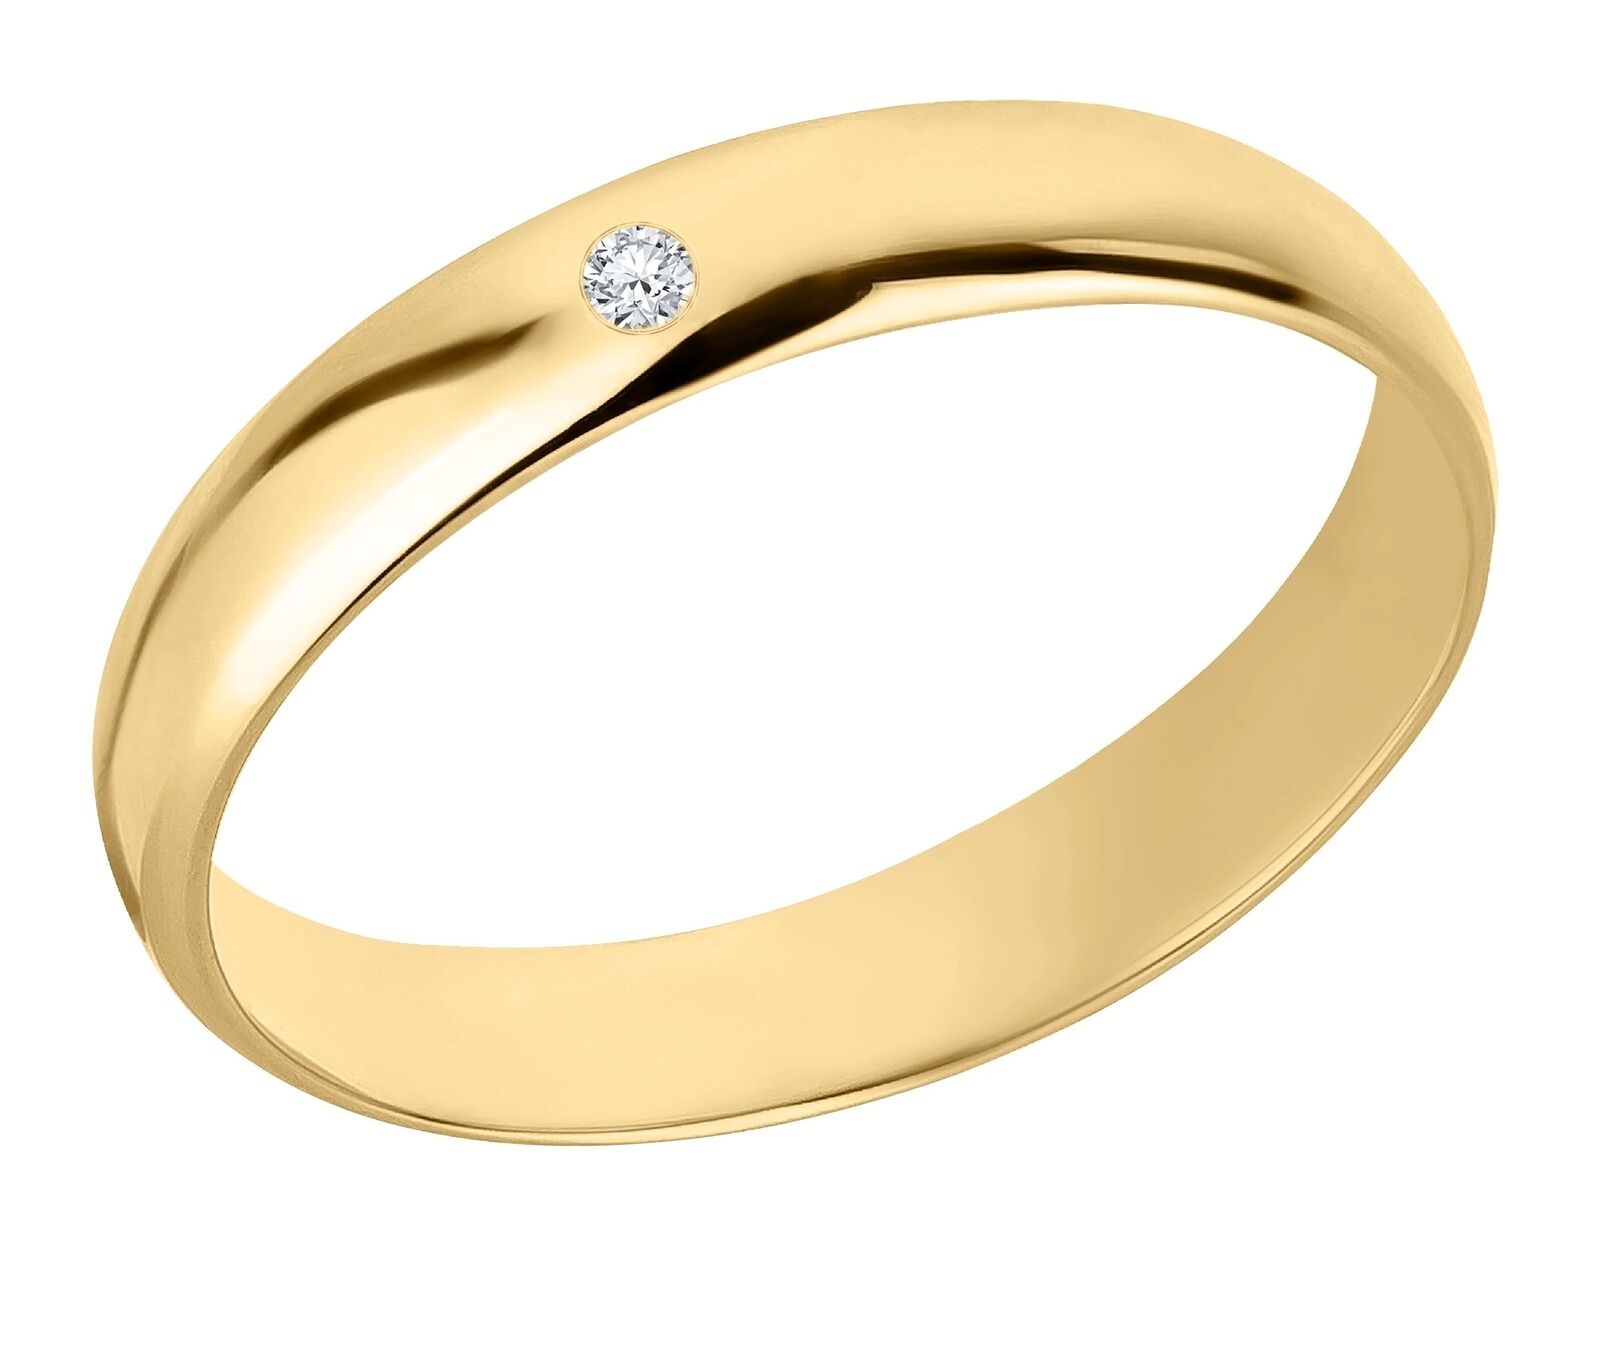 Trauring aus 375 Gold mit 0,02 ct Diamant Brillant 4 mm breit Gelbgold hochglanz